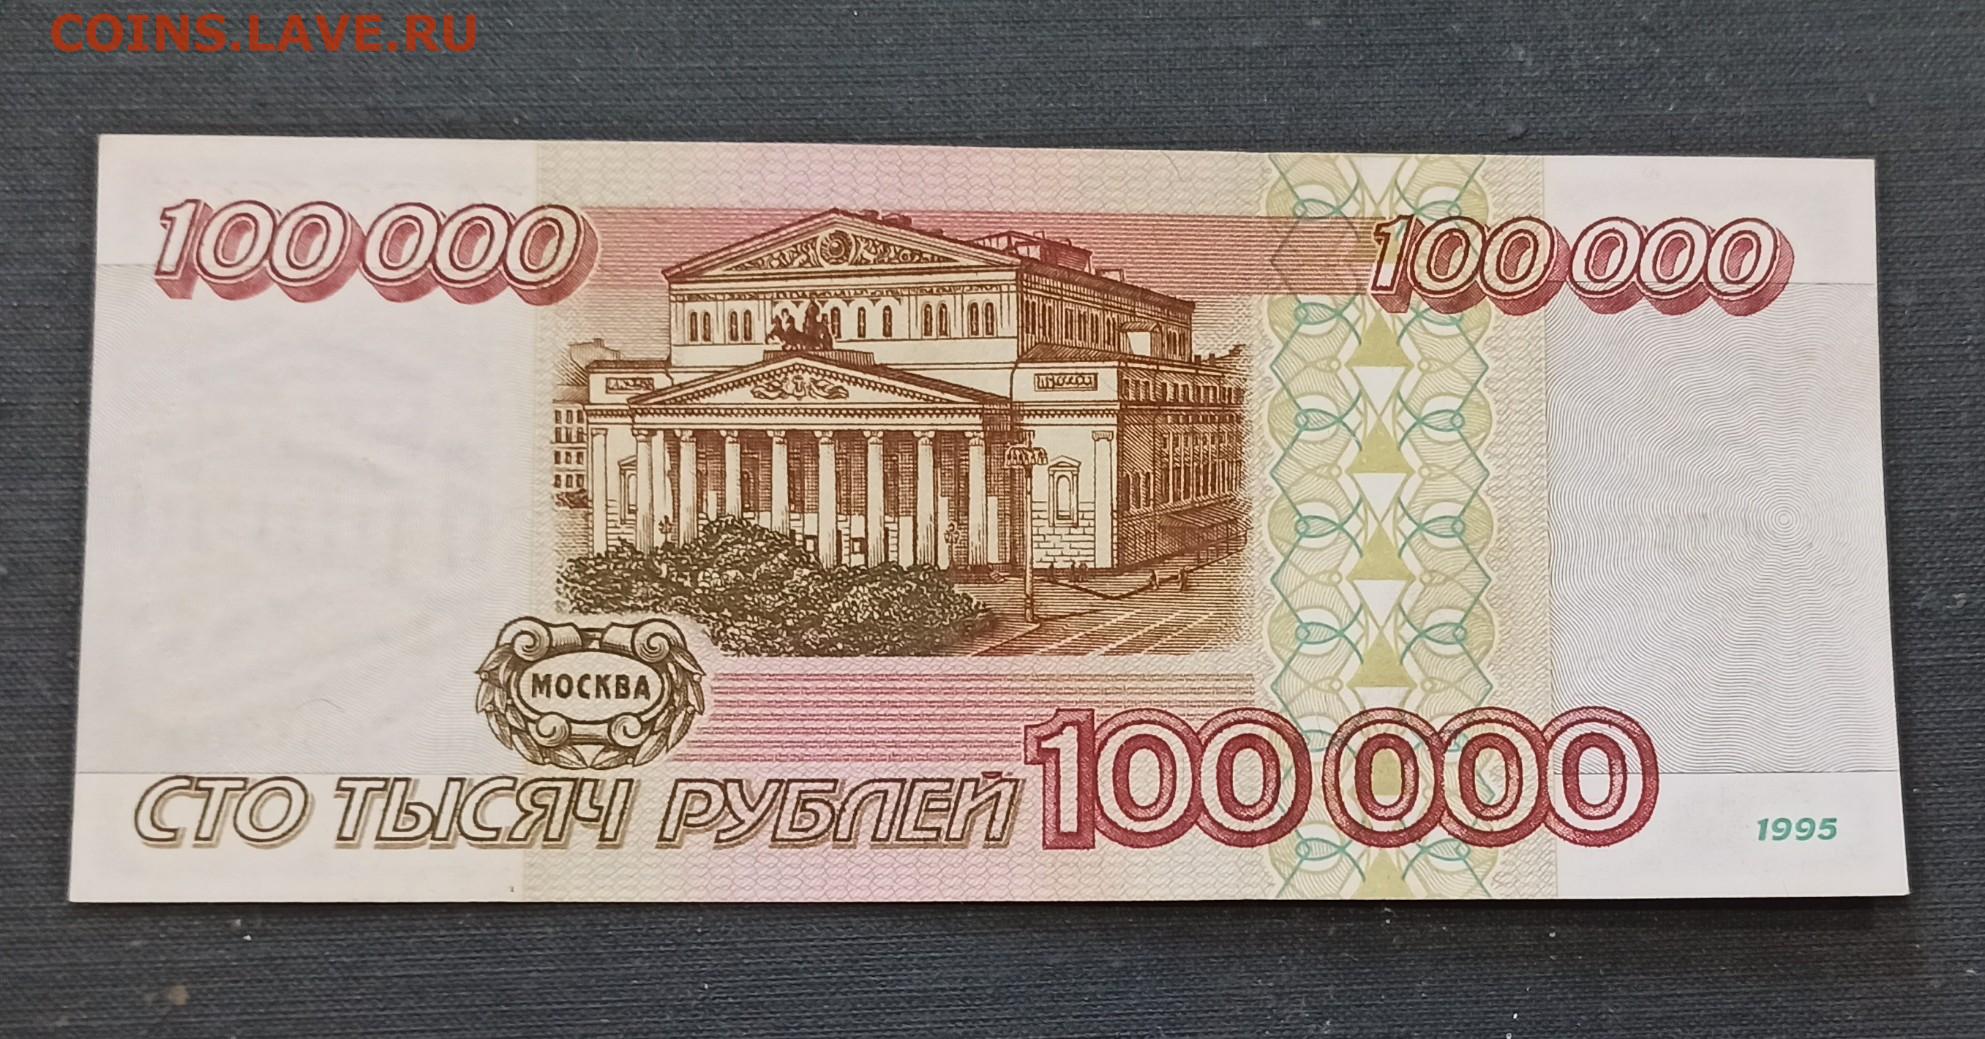 100000 1 10. 100000 Рублей 1995 года. 1000000 Рублей 1995 года. Рубли 1995 года. 10 Тысяч рублей 1995.